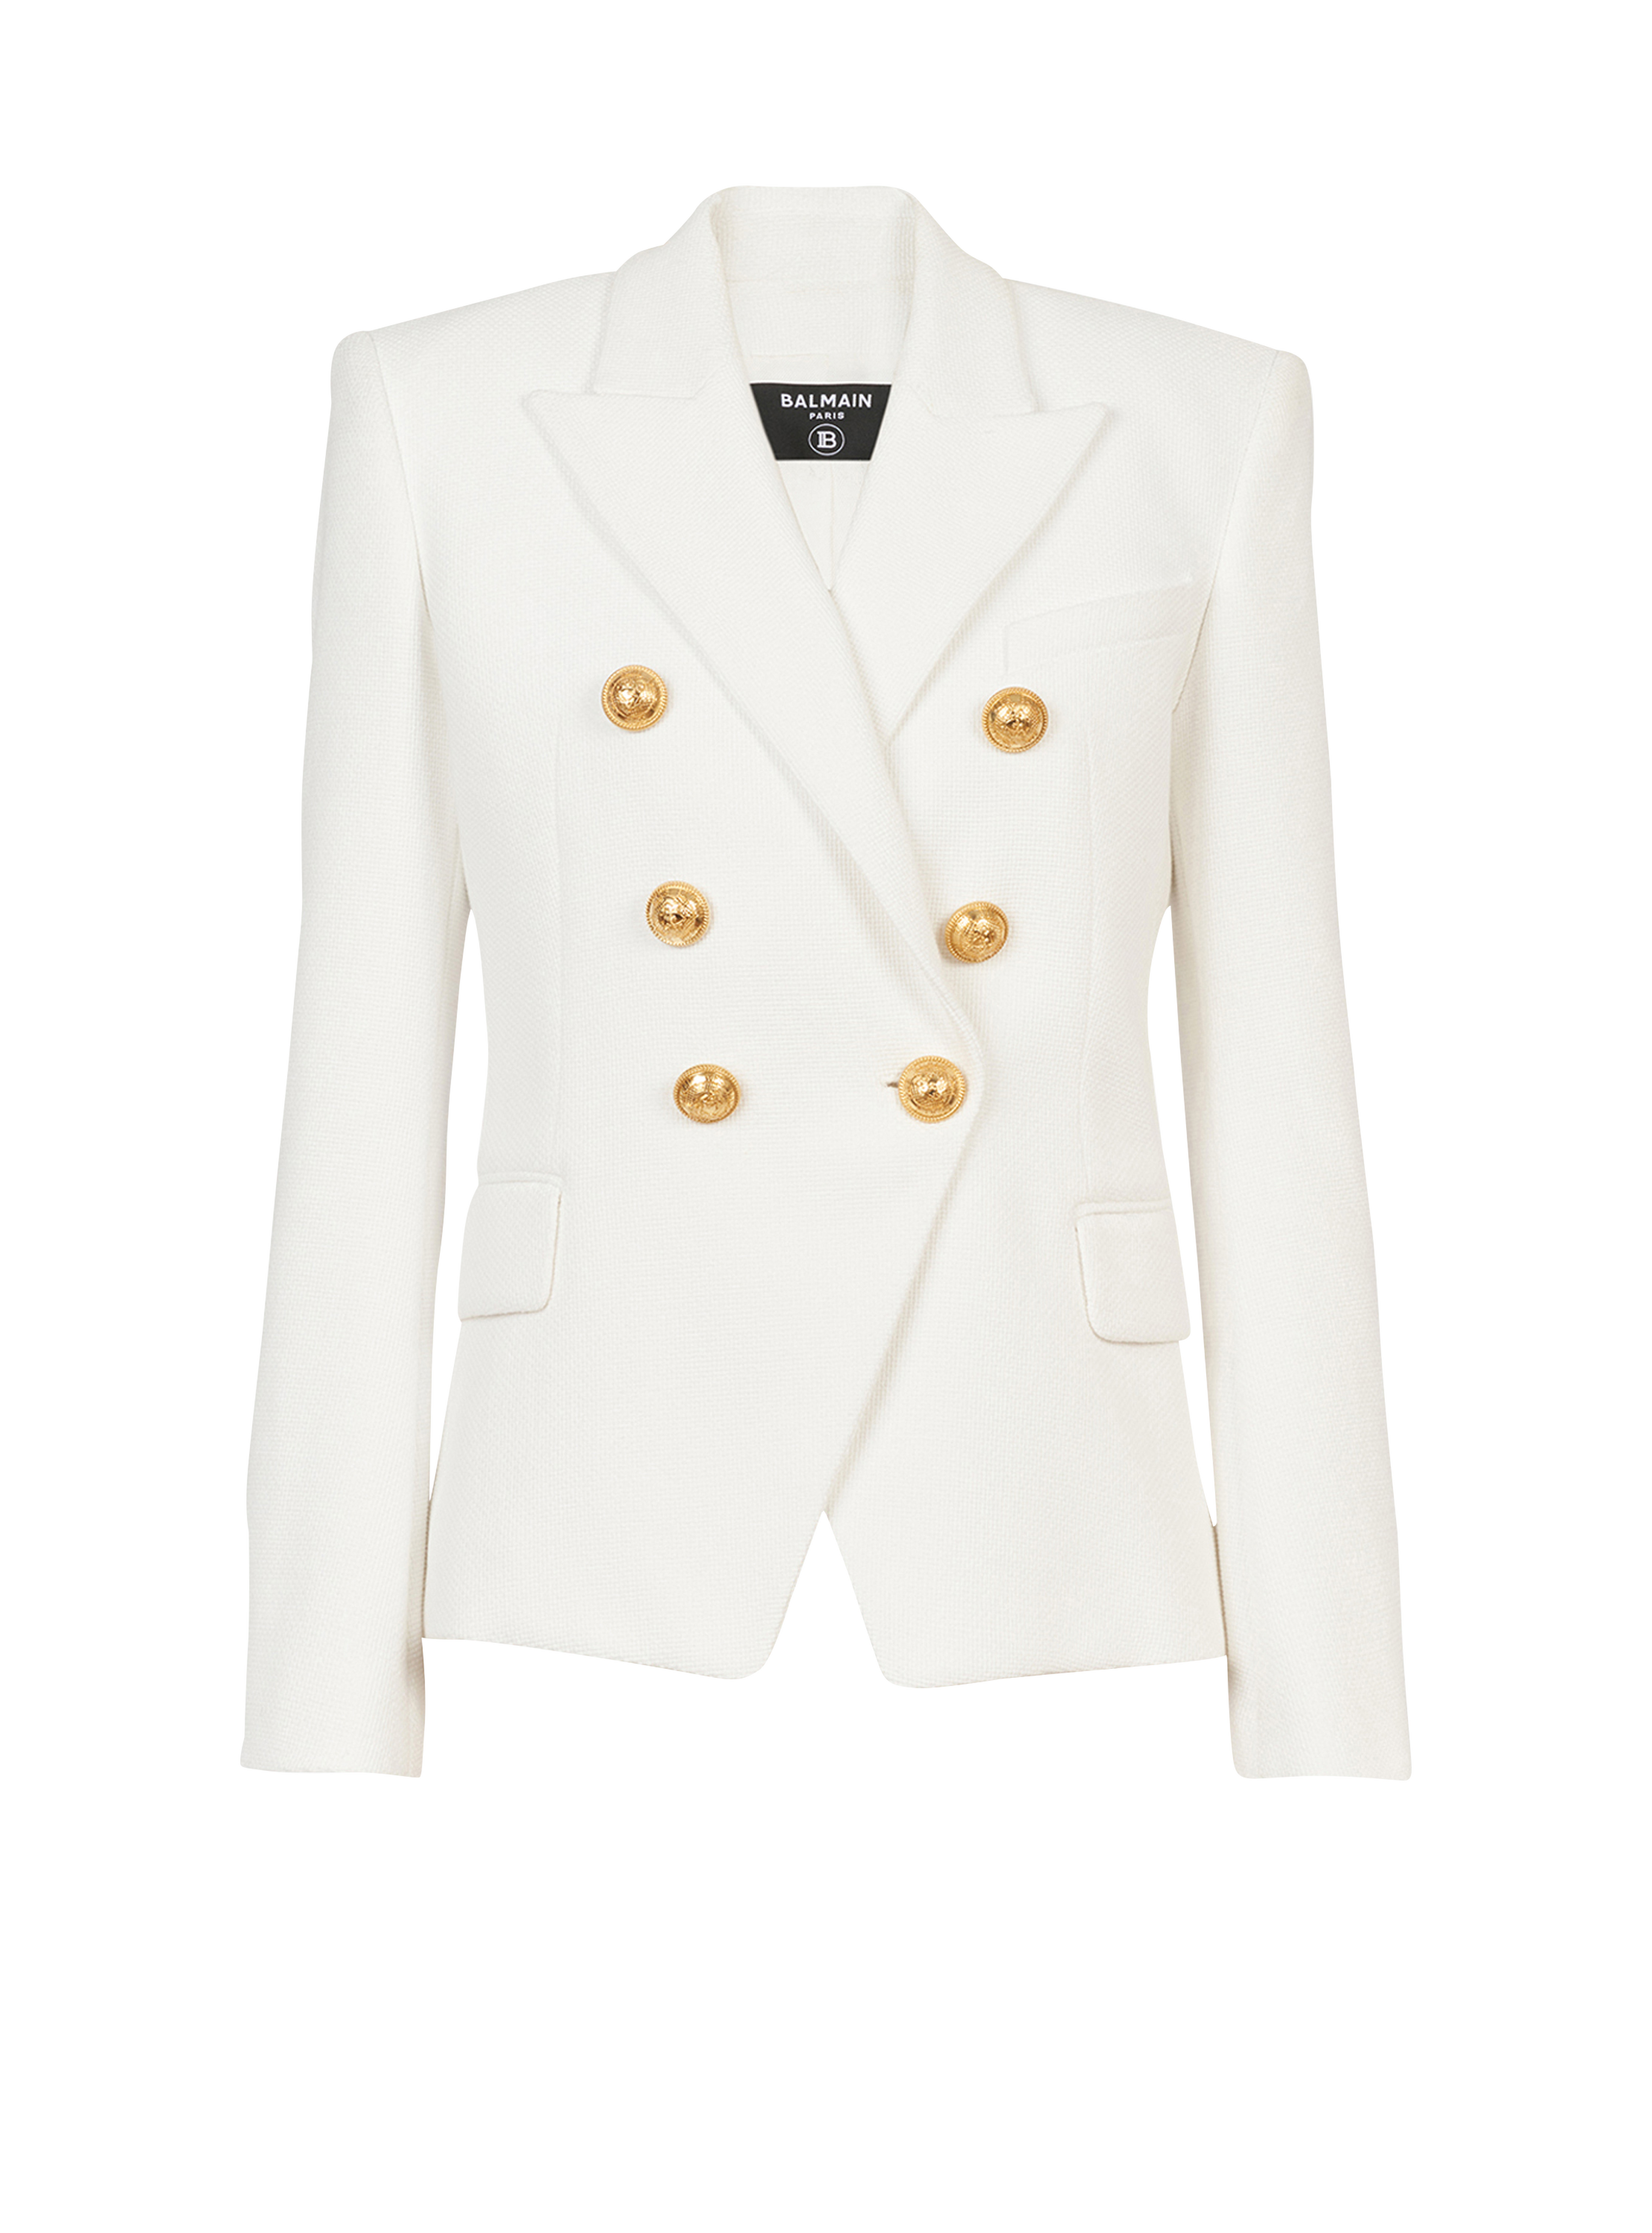 棉珠地工艺双排扣夹克, white